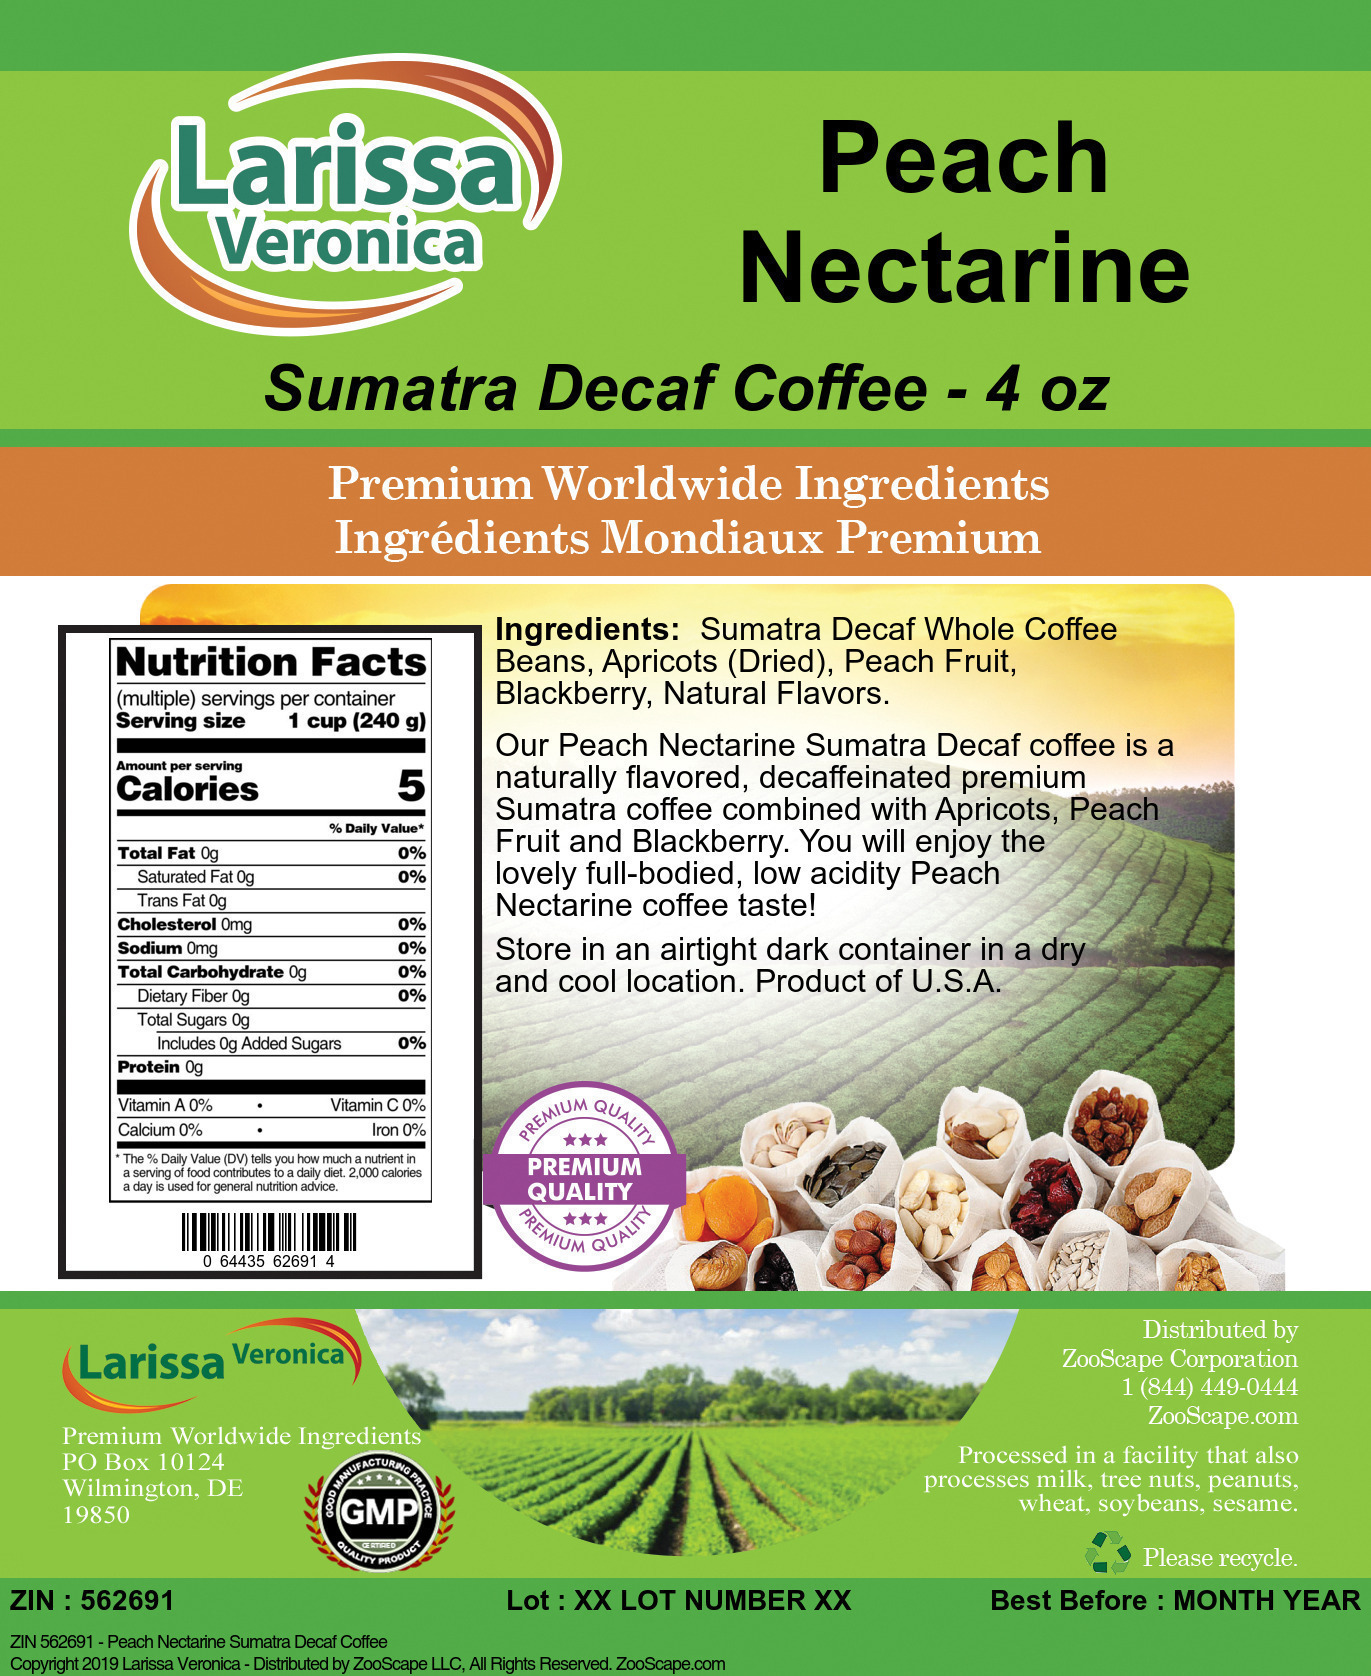 Peach Nectarine Sumatra Decaf Coffee - Label